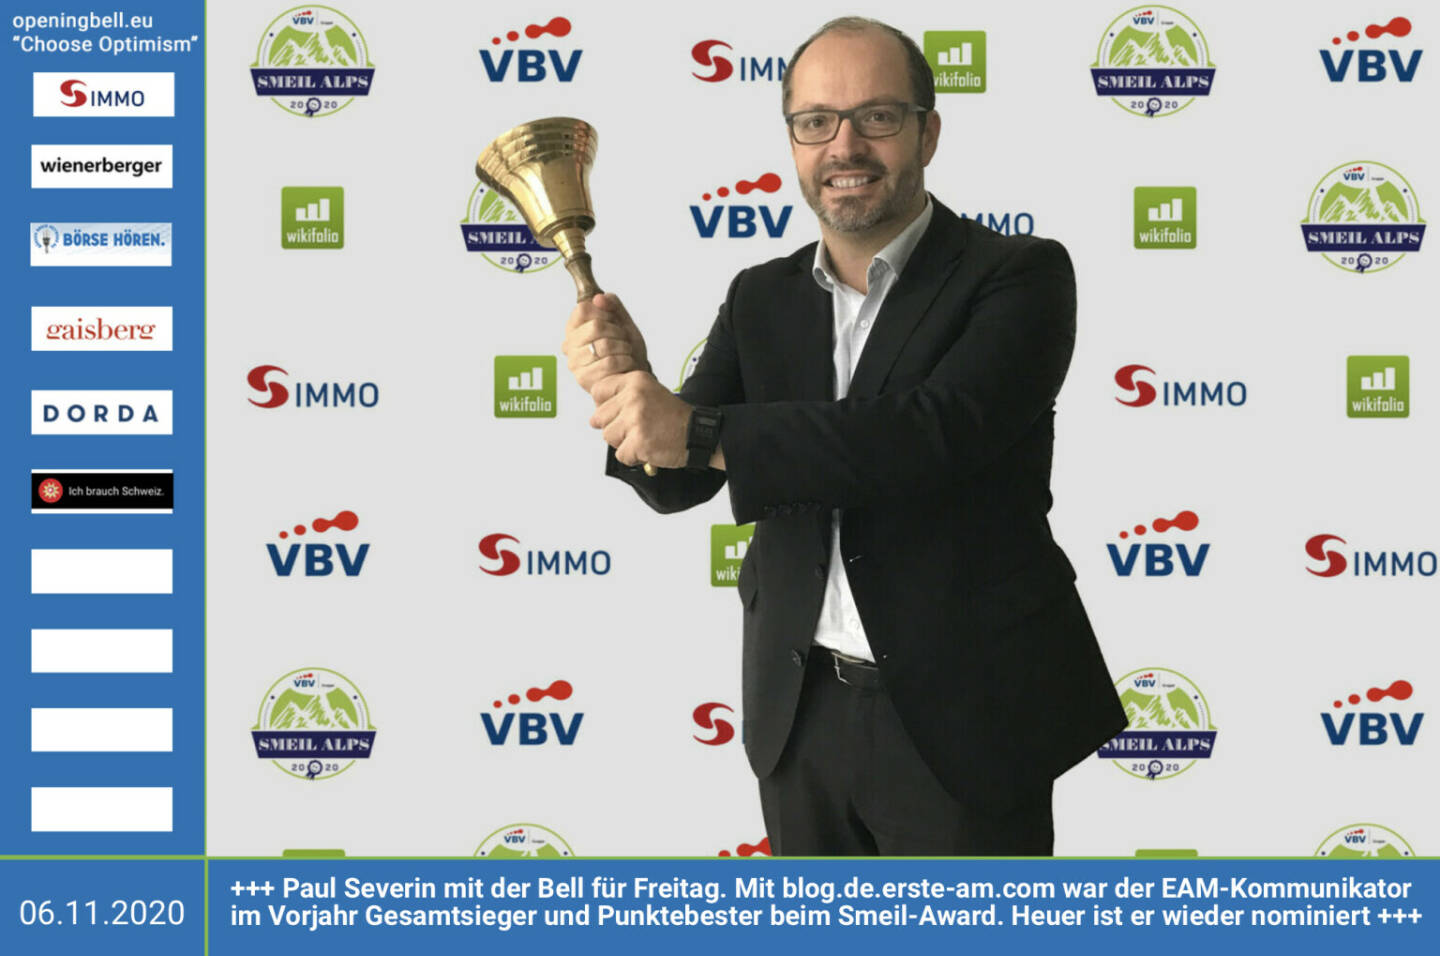 6.11.: Paul Severin läutet die Opening Bell für Freitag. Mit http://blog.de.erste-am.com war der EAM-Kommunikator im Vorjahr Gesamtsieger und Punktebester beim Finanzbloggeraward Novomatic Smeil Alps 2019. Der Award wird heuer unter VBV Smeil Alps 2020 ausgetragen und bis 7. Dezember läuft die Nominierungsphase, bereits 63 Nominees sind da, siehe http://www.smeil-award.com http://www.vbv.at Mehr Choose Optimism: https://boerse-social.com/category/choose_optimism  https://www.facebook.com/chooseoptimism/